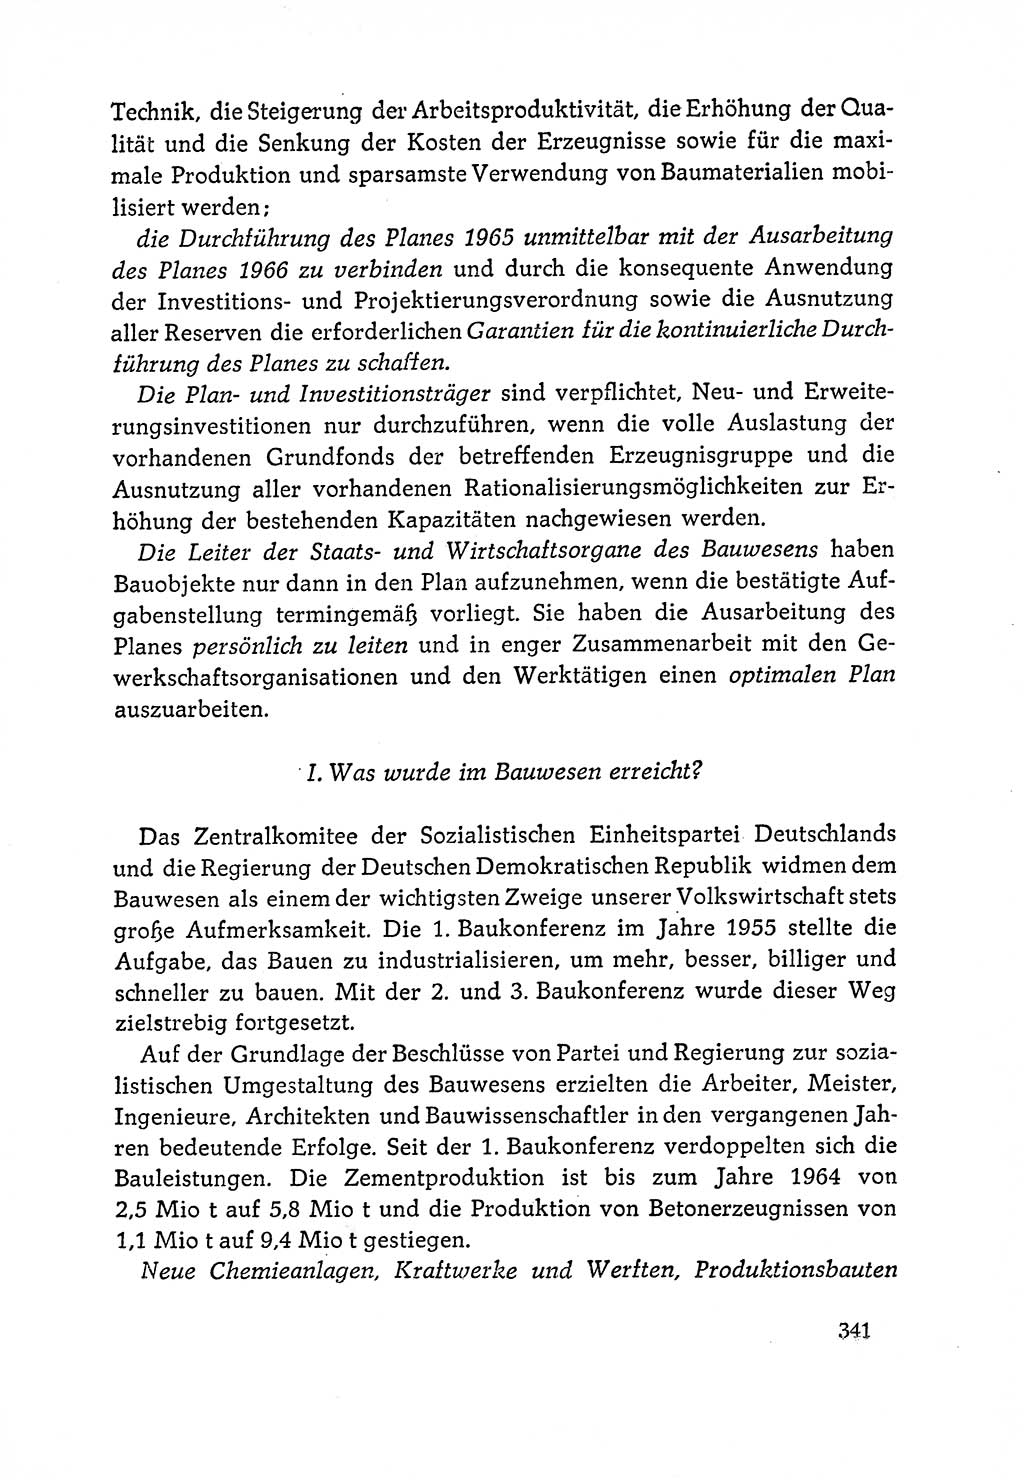 Dokumente der Sozialistischen Einheitspartei Deutschlands (SED) [Deutsche Demokratische Republik (DDR)] 1964-1965, Seite 343 (Dok. SED DDR 1964-1965, S. 343)